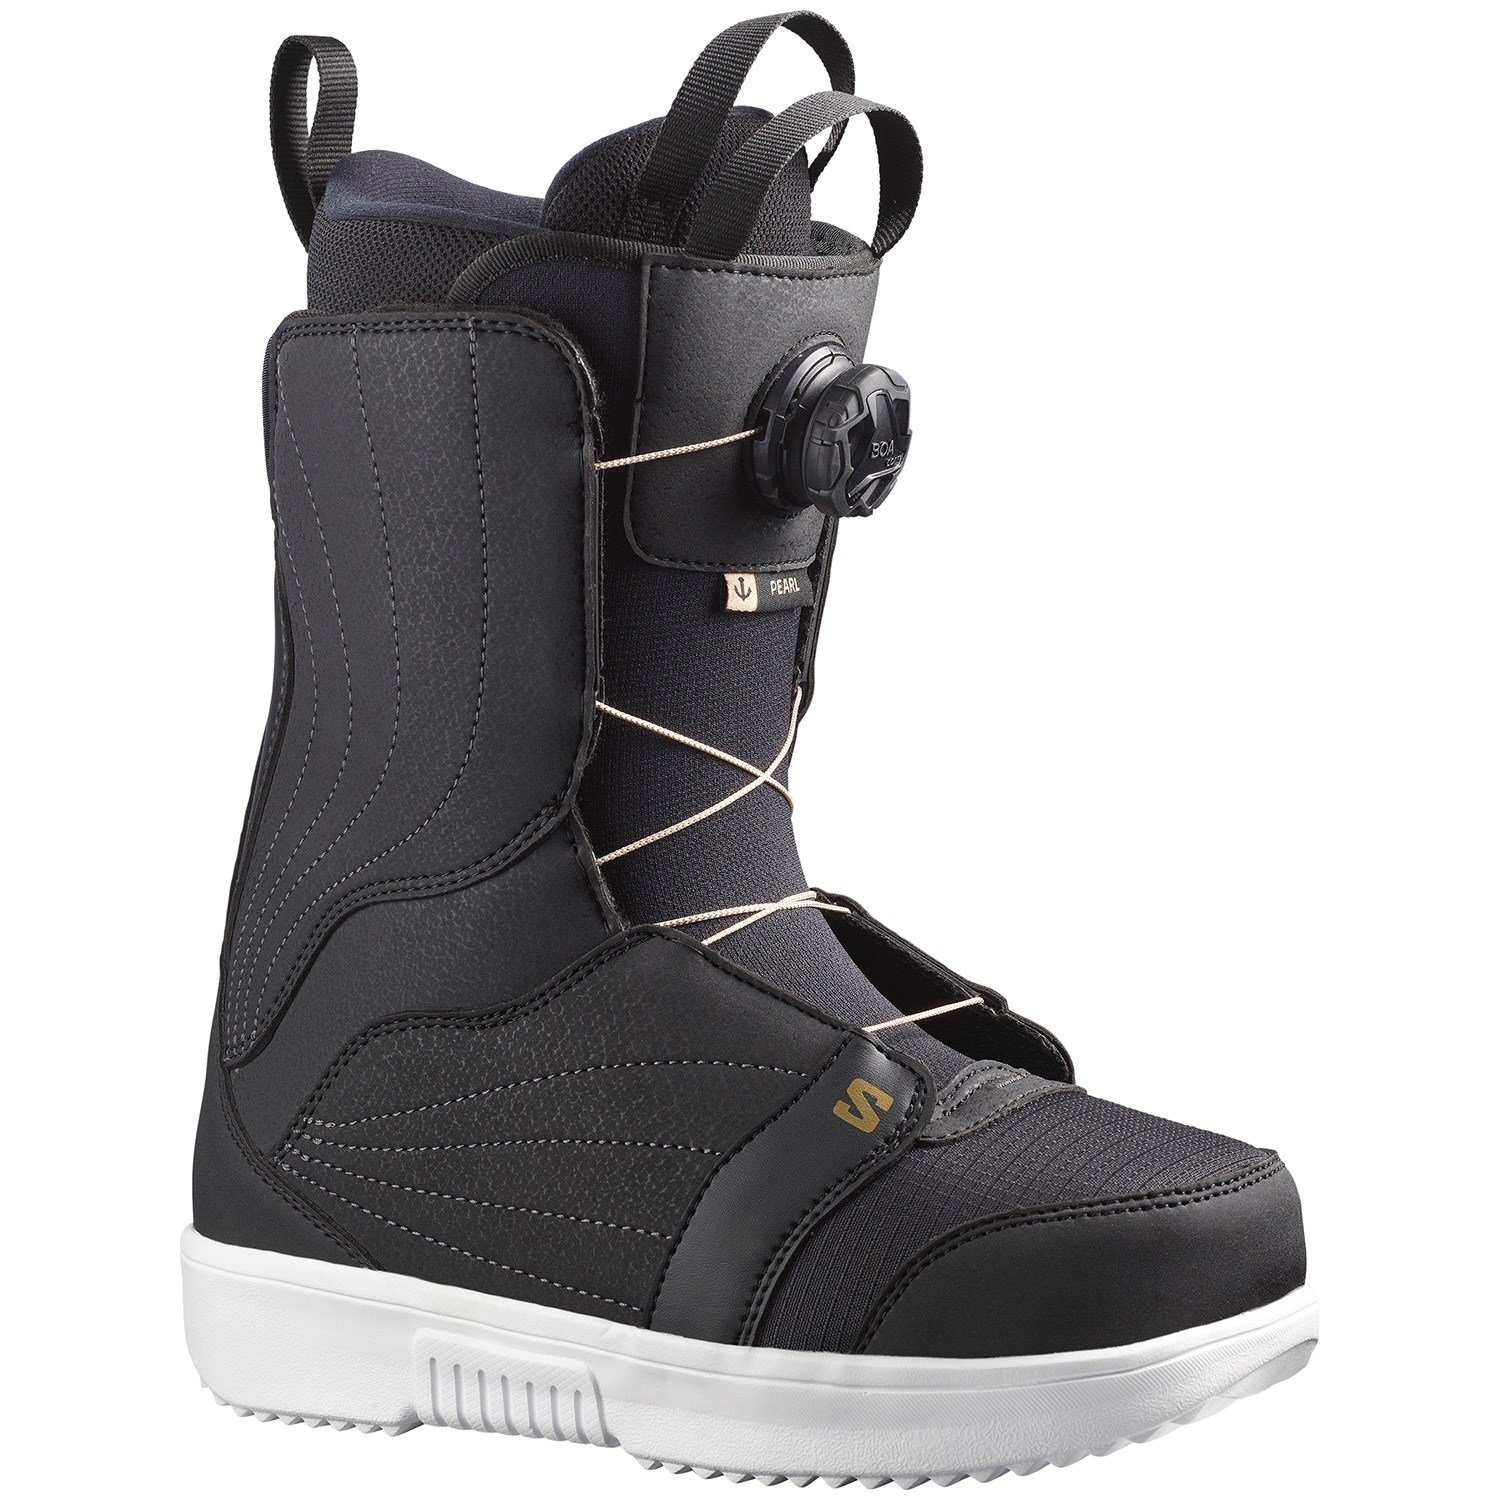 Salomon Pearl Boa Snowboard Boots - Women's | evo